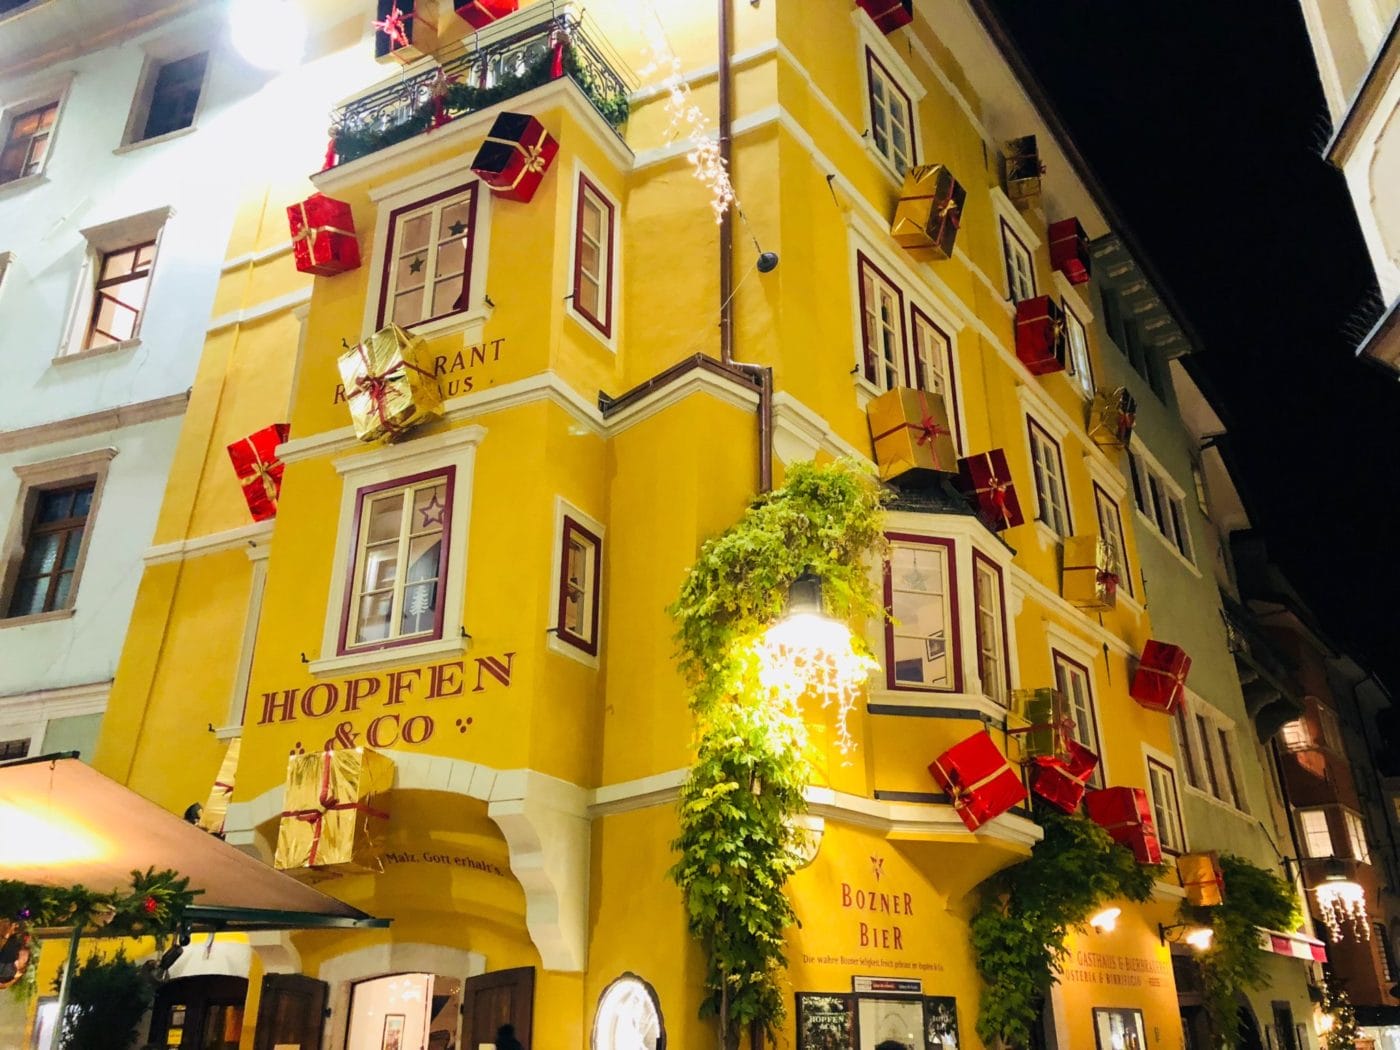 The decorations in Bolzano city center